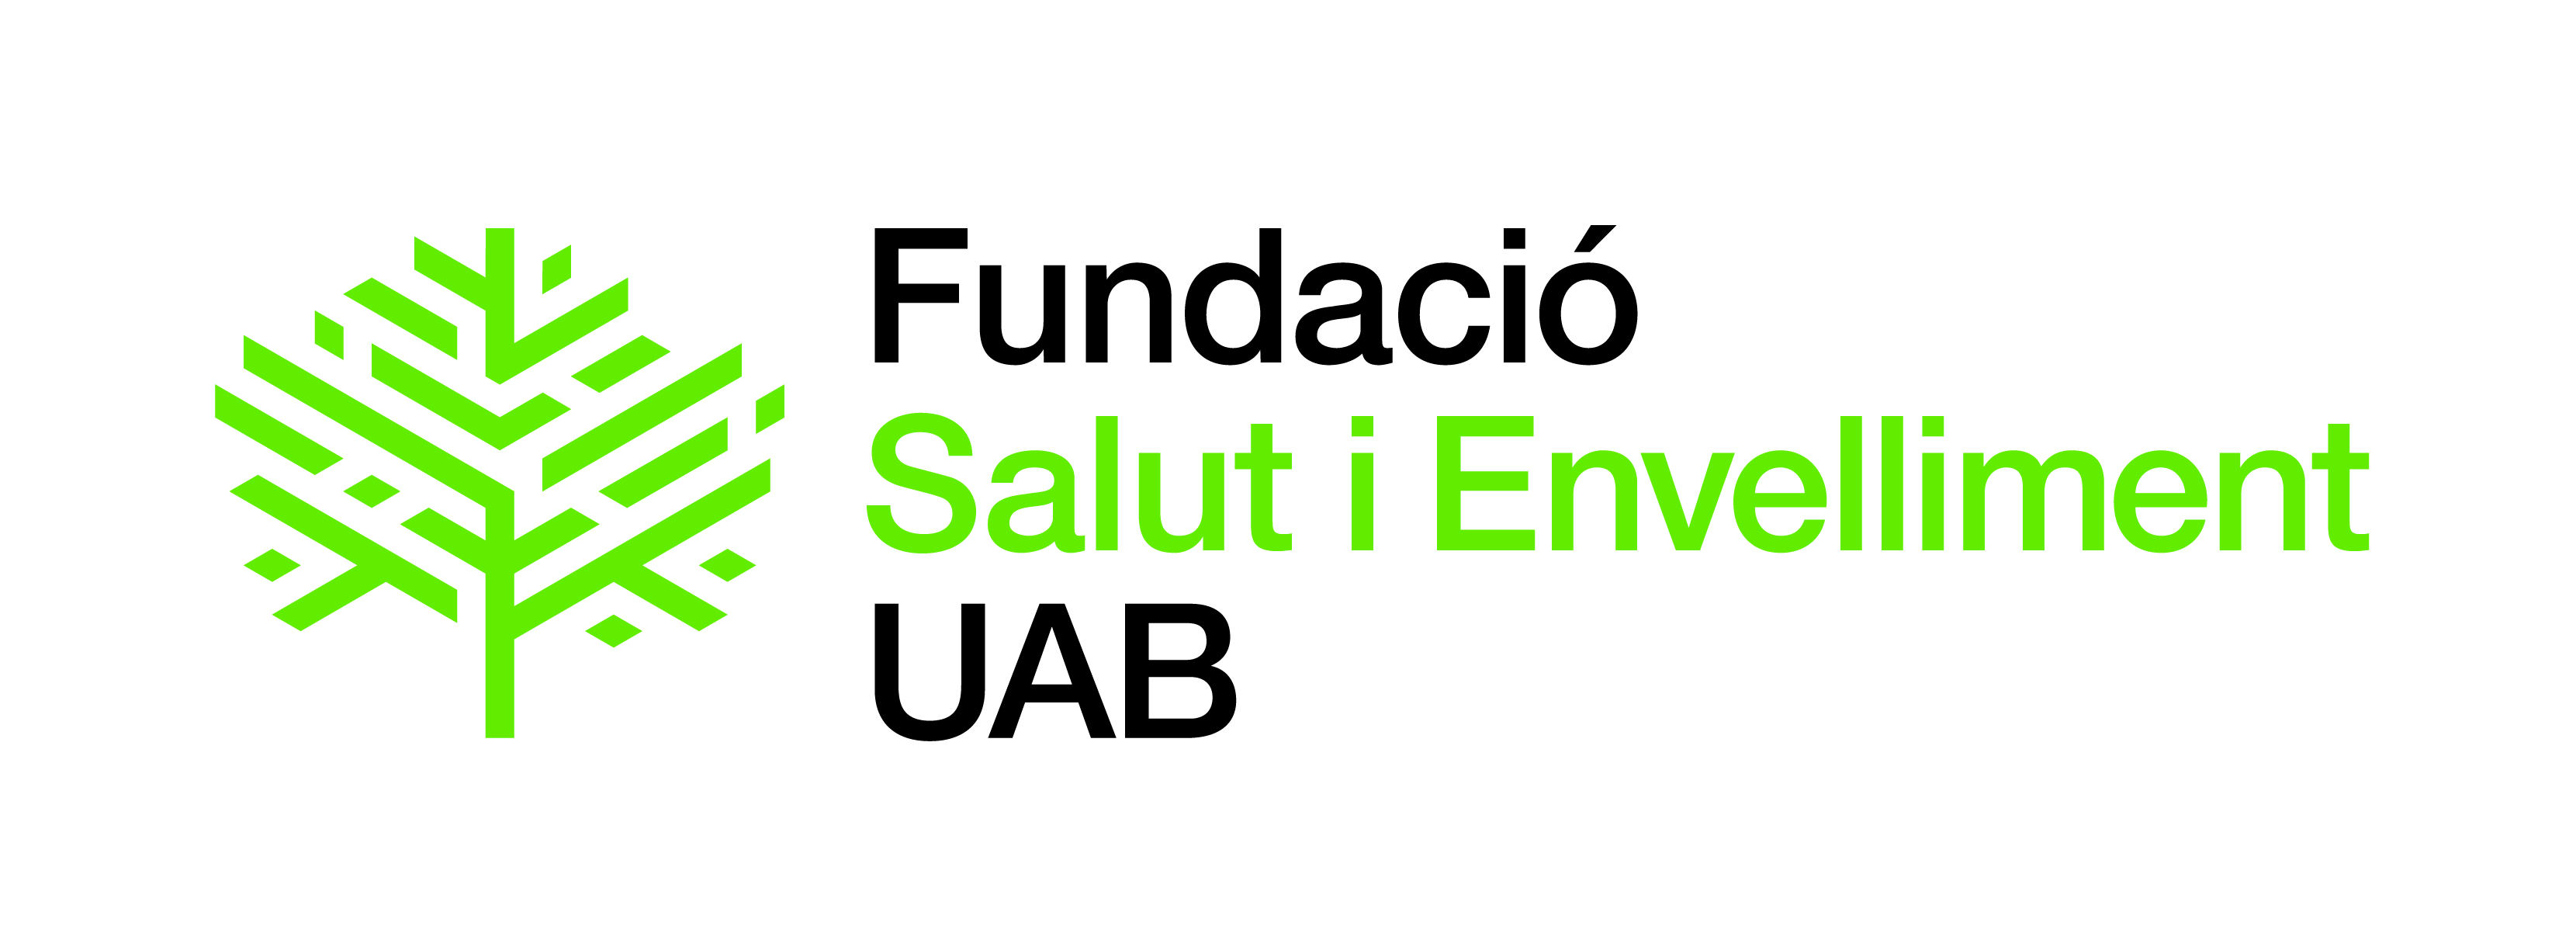 Logotip Fundació Salut i Envelliment